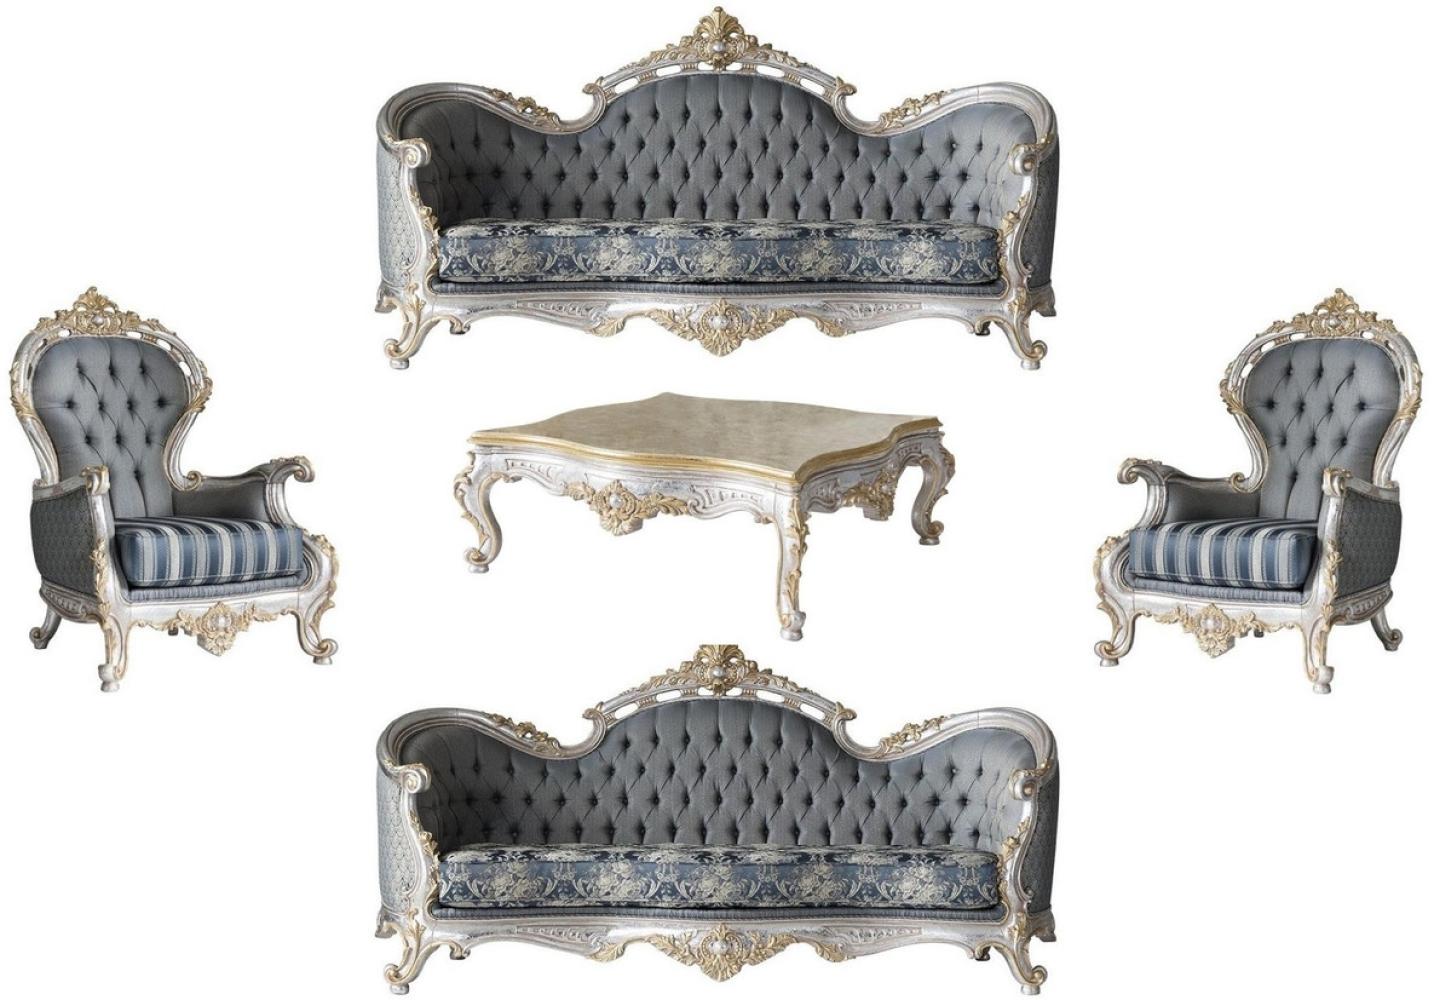 Casa Padrino Luxus Barock Wohnzimmer Set Grau / Blau / Silber / Gold - 2 Sofas & 2 Sessel & 1 Couchtisch - Prunkvolle Wohnzimmer Möbel im Barockstil Bild 1